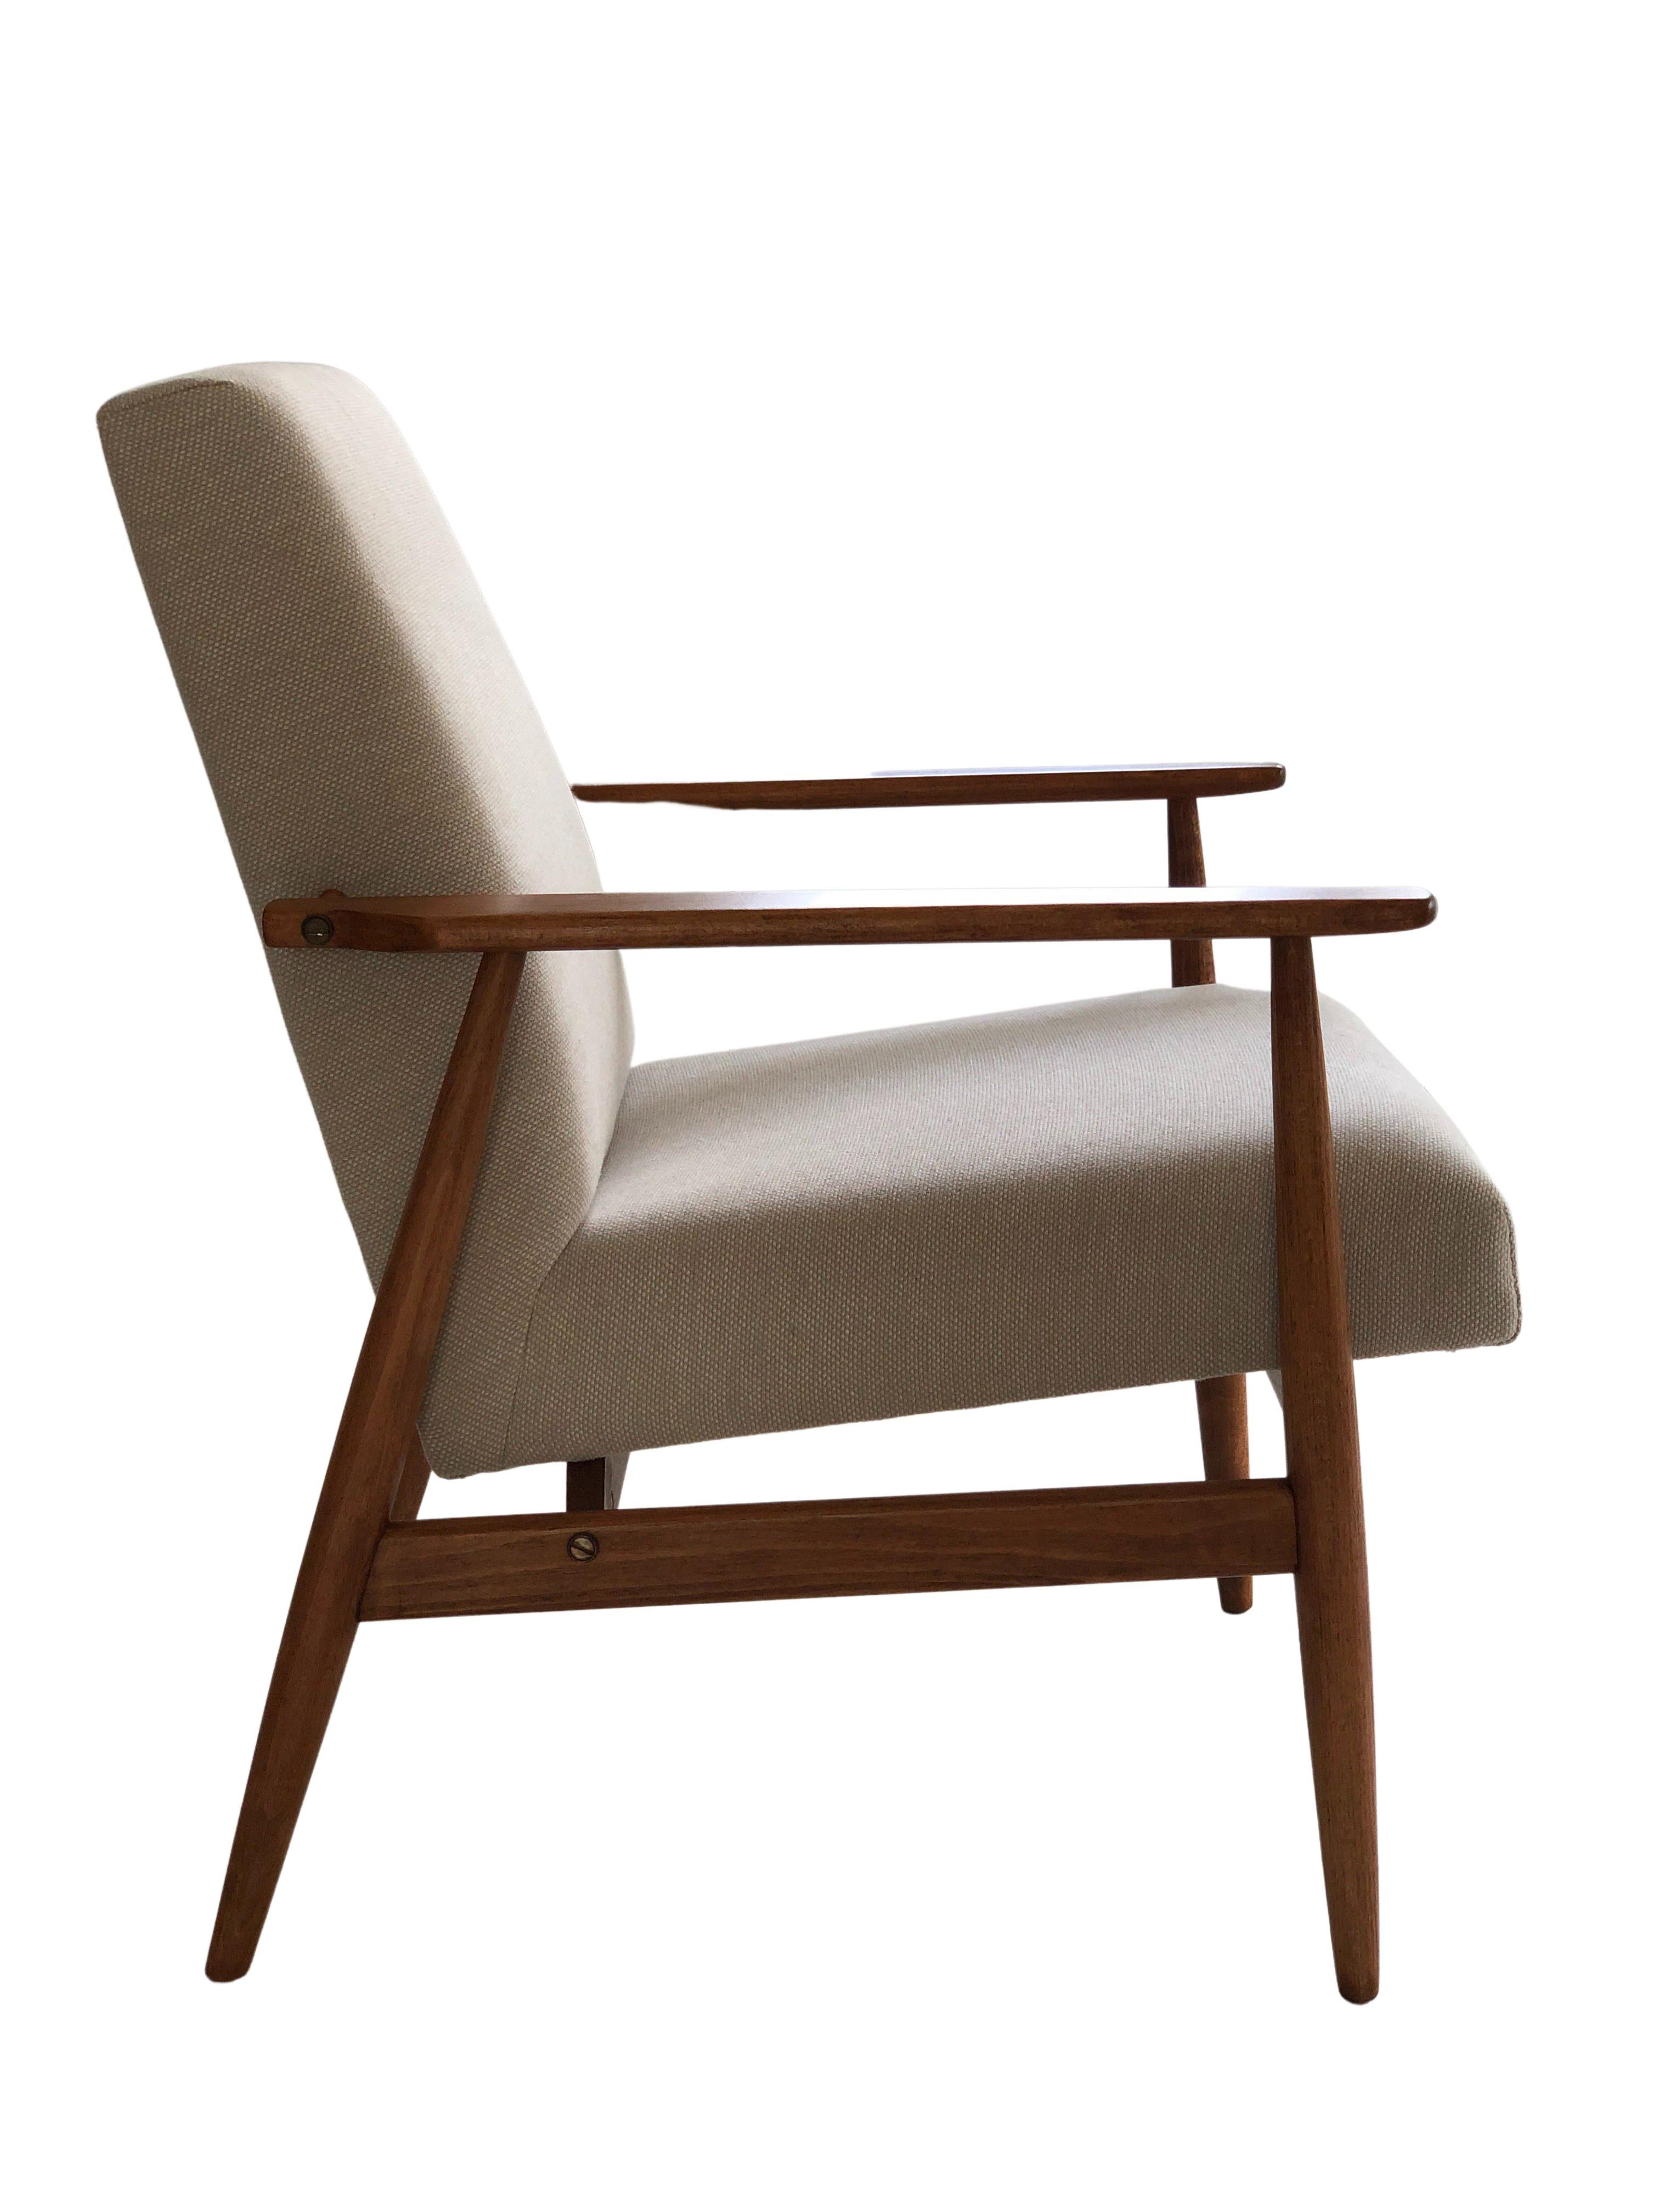 Le fauteuil conçu par Henryk Lis. La structure est en bois de hêtre de couleur noyer chaud, finie avec un vernis satiné semi-mat. Le revêtement est un tissu lourd en coton et lin de couleur beige. 

Le fauteuil a été entièrement restauré, tant au